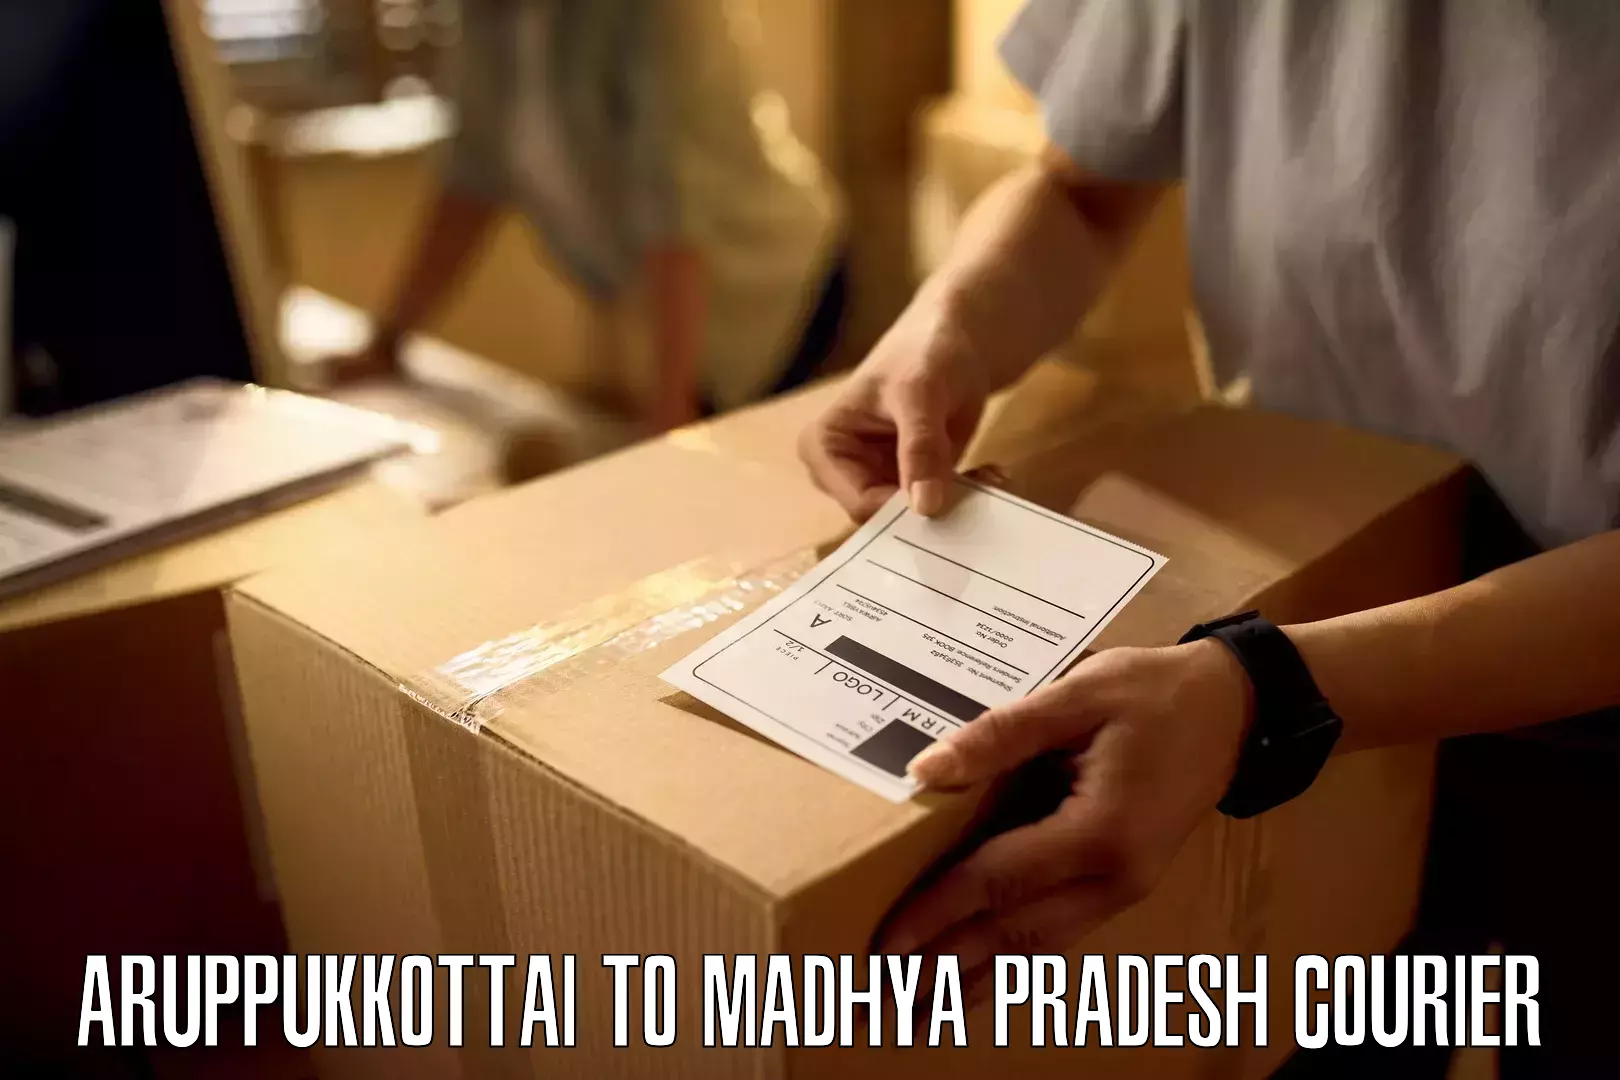 Custom courier strategies Aruppukkottai to Madhya Pradesh